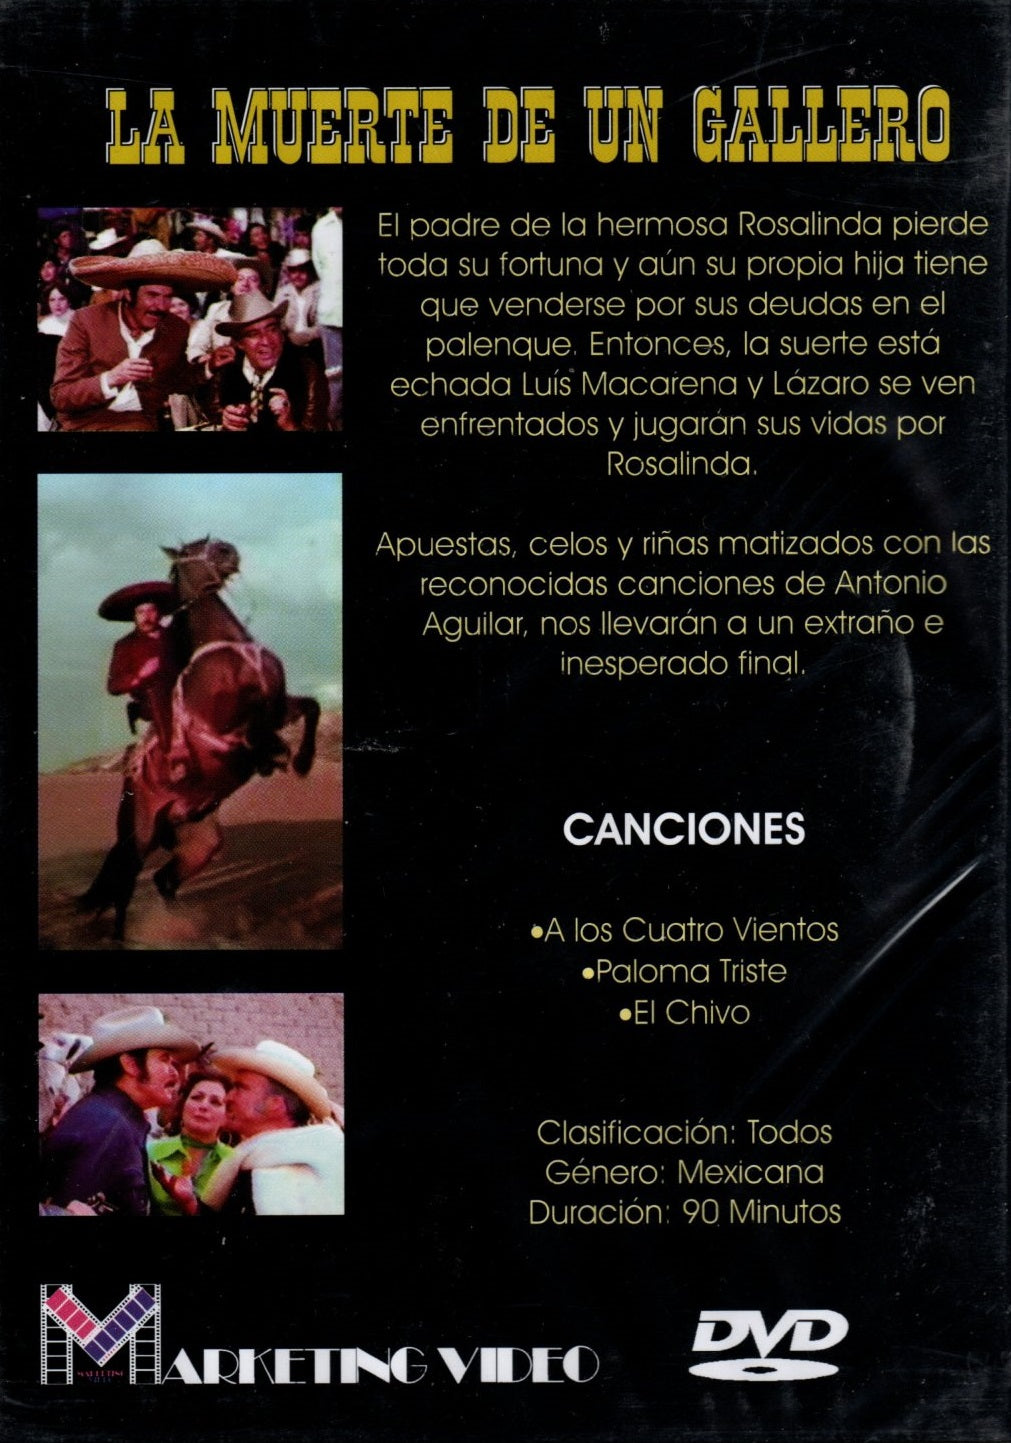 DVD Antonio Aguilar - La muerte de un gallero